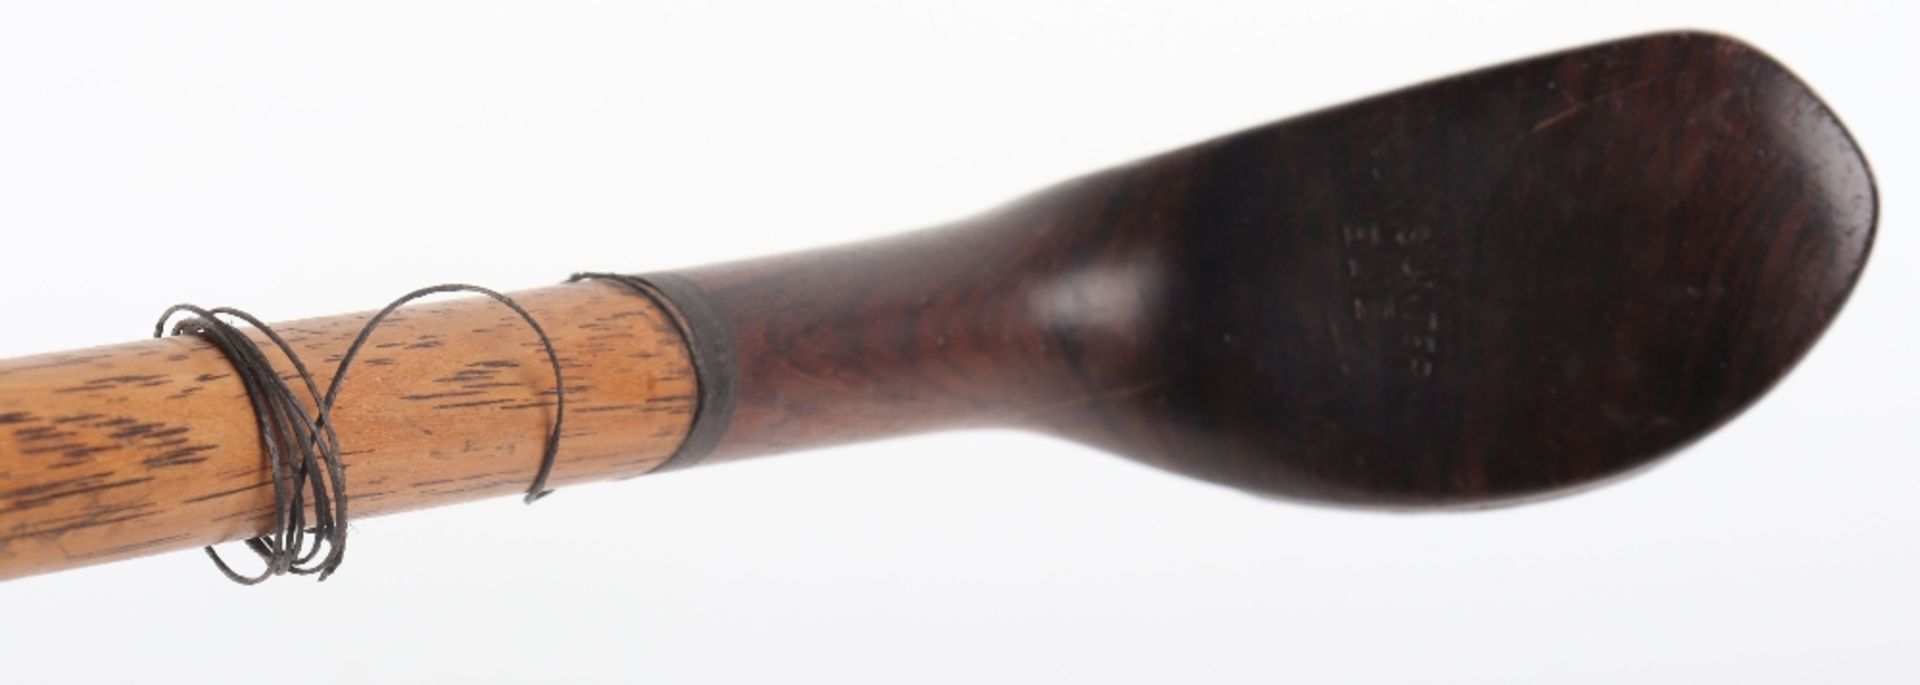 A 19th century ‘Sunday Stick’ walking cane - Image 6 of 8